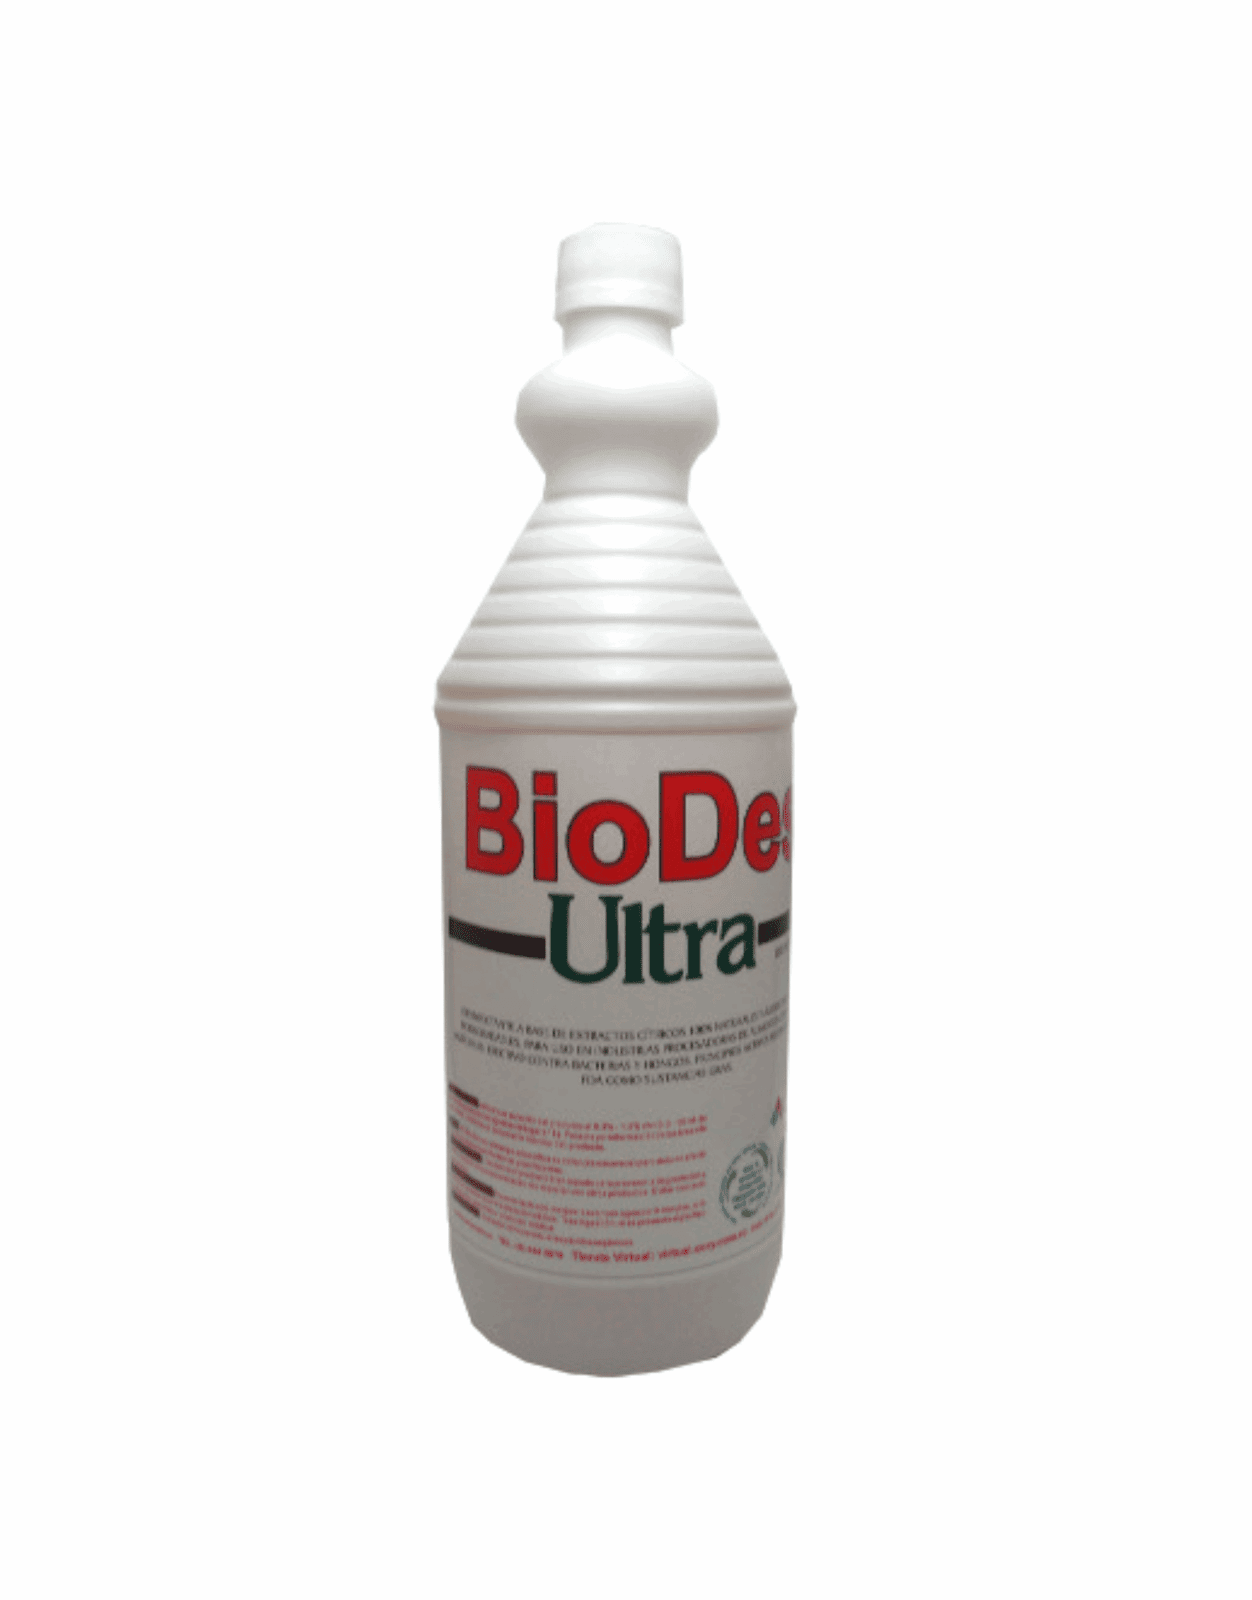 Desinfectante Orgánico Biodes Ultra